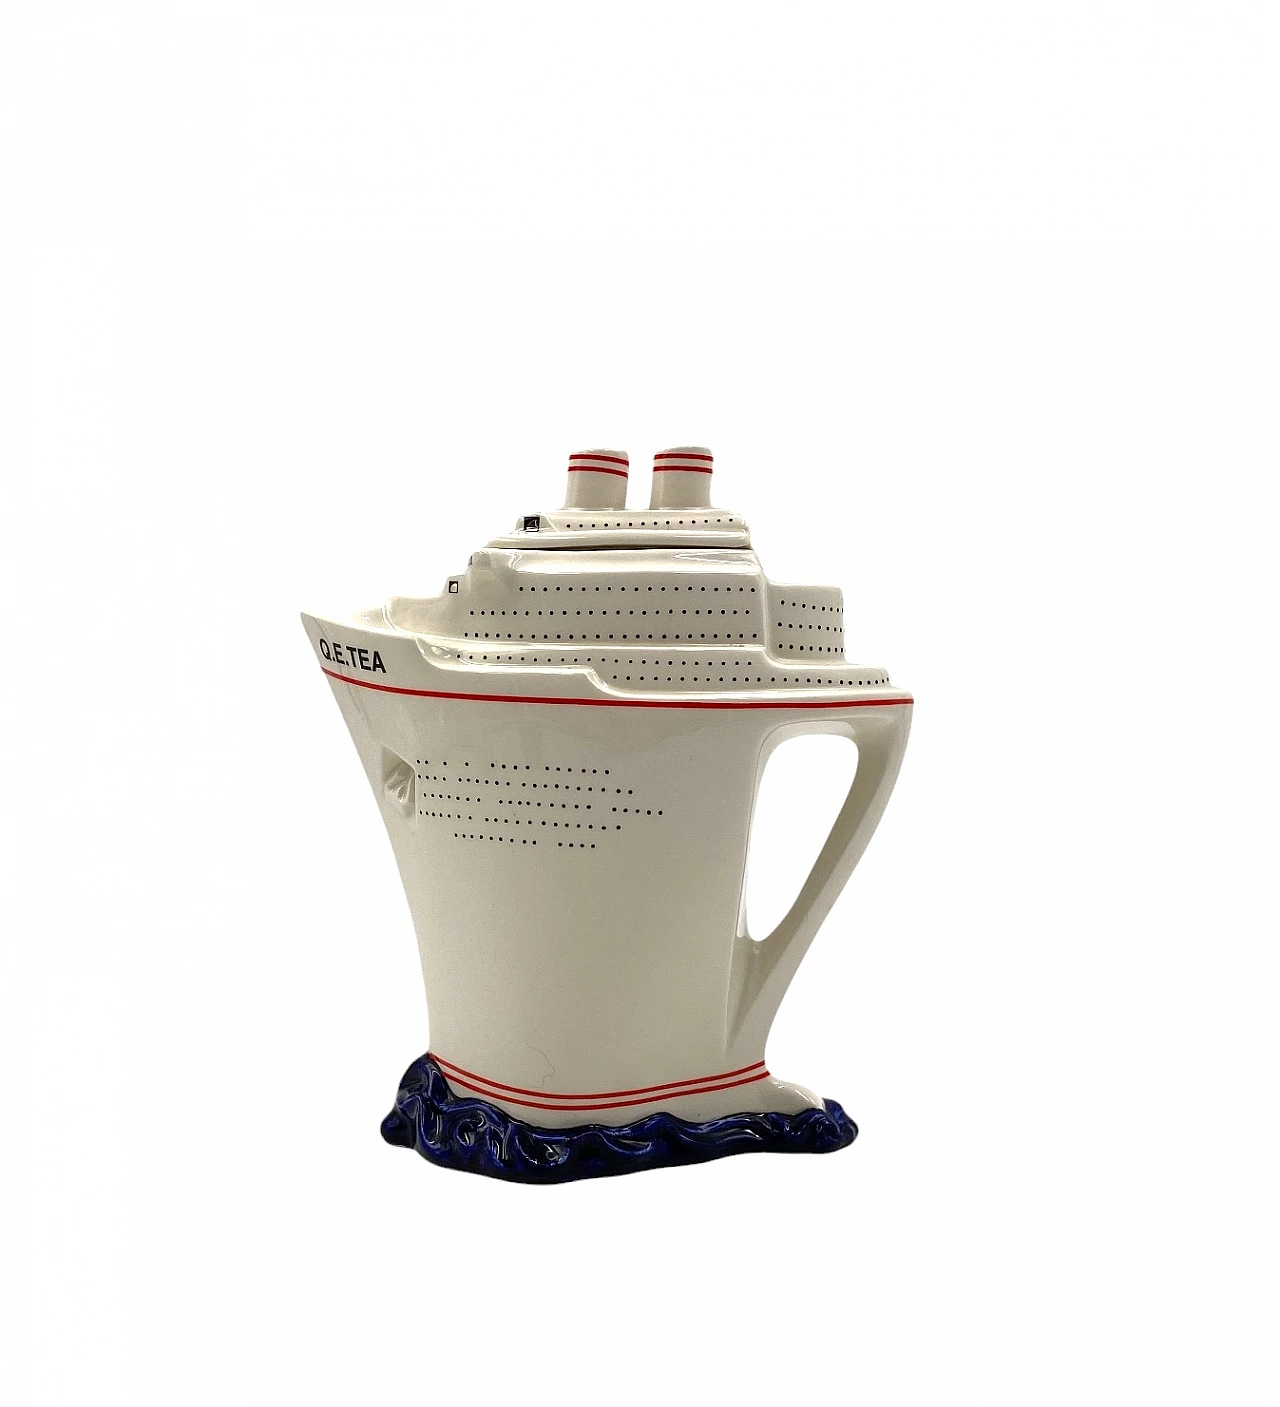 Queen Elizabeth II cruise ship teapot by Paul Cardew 1